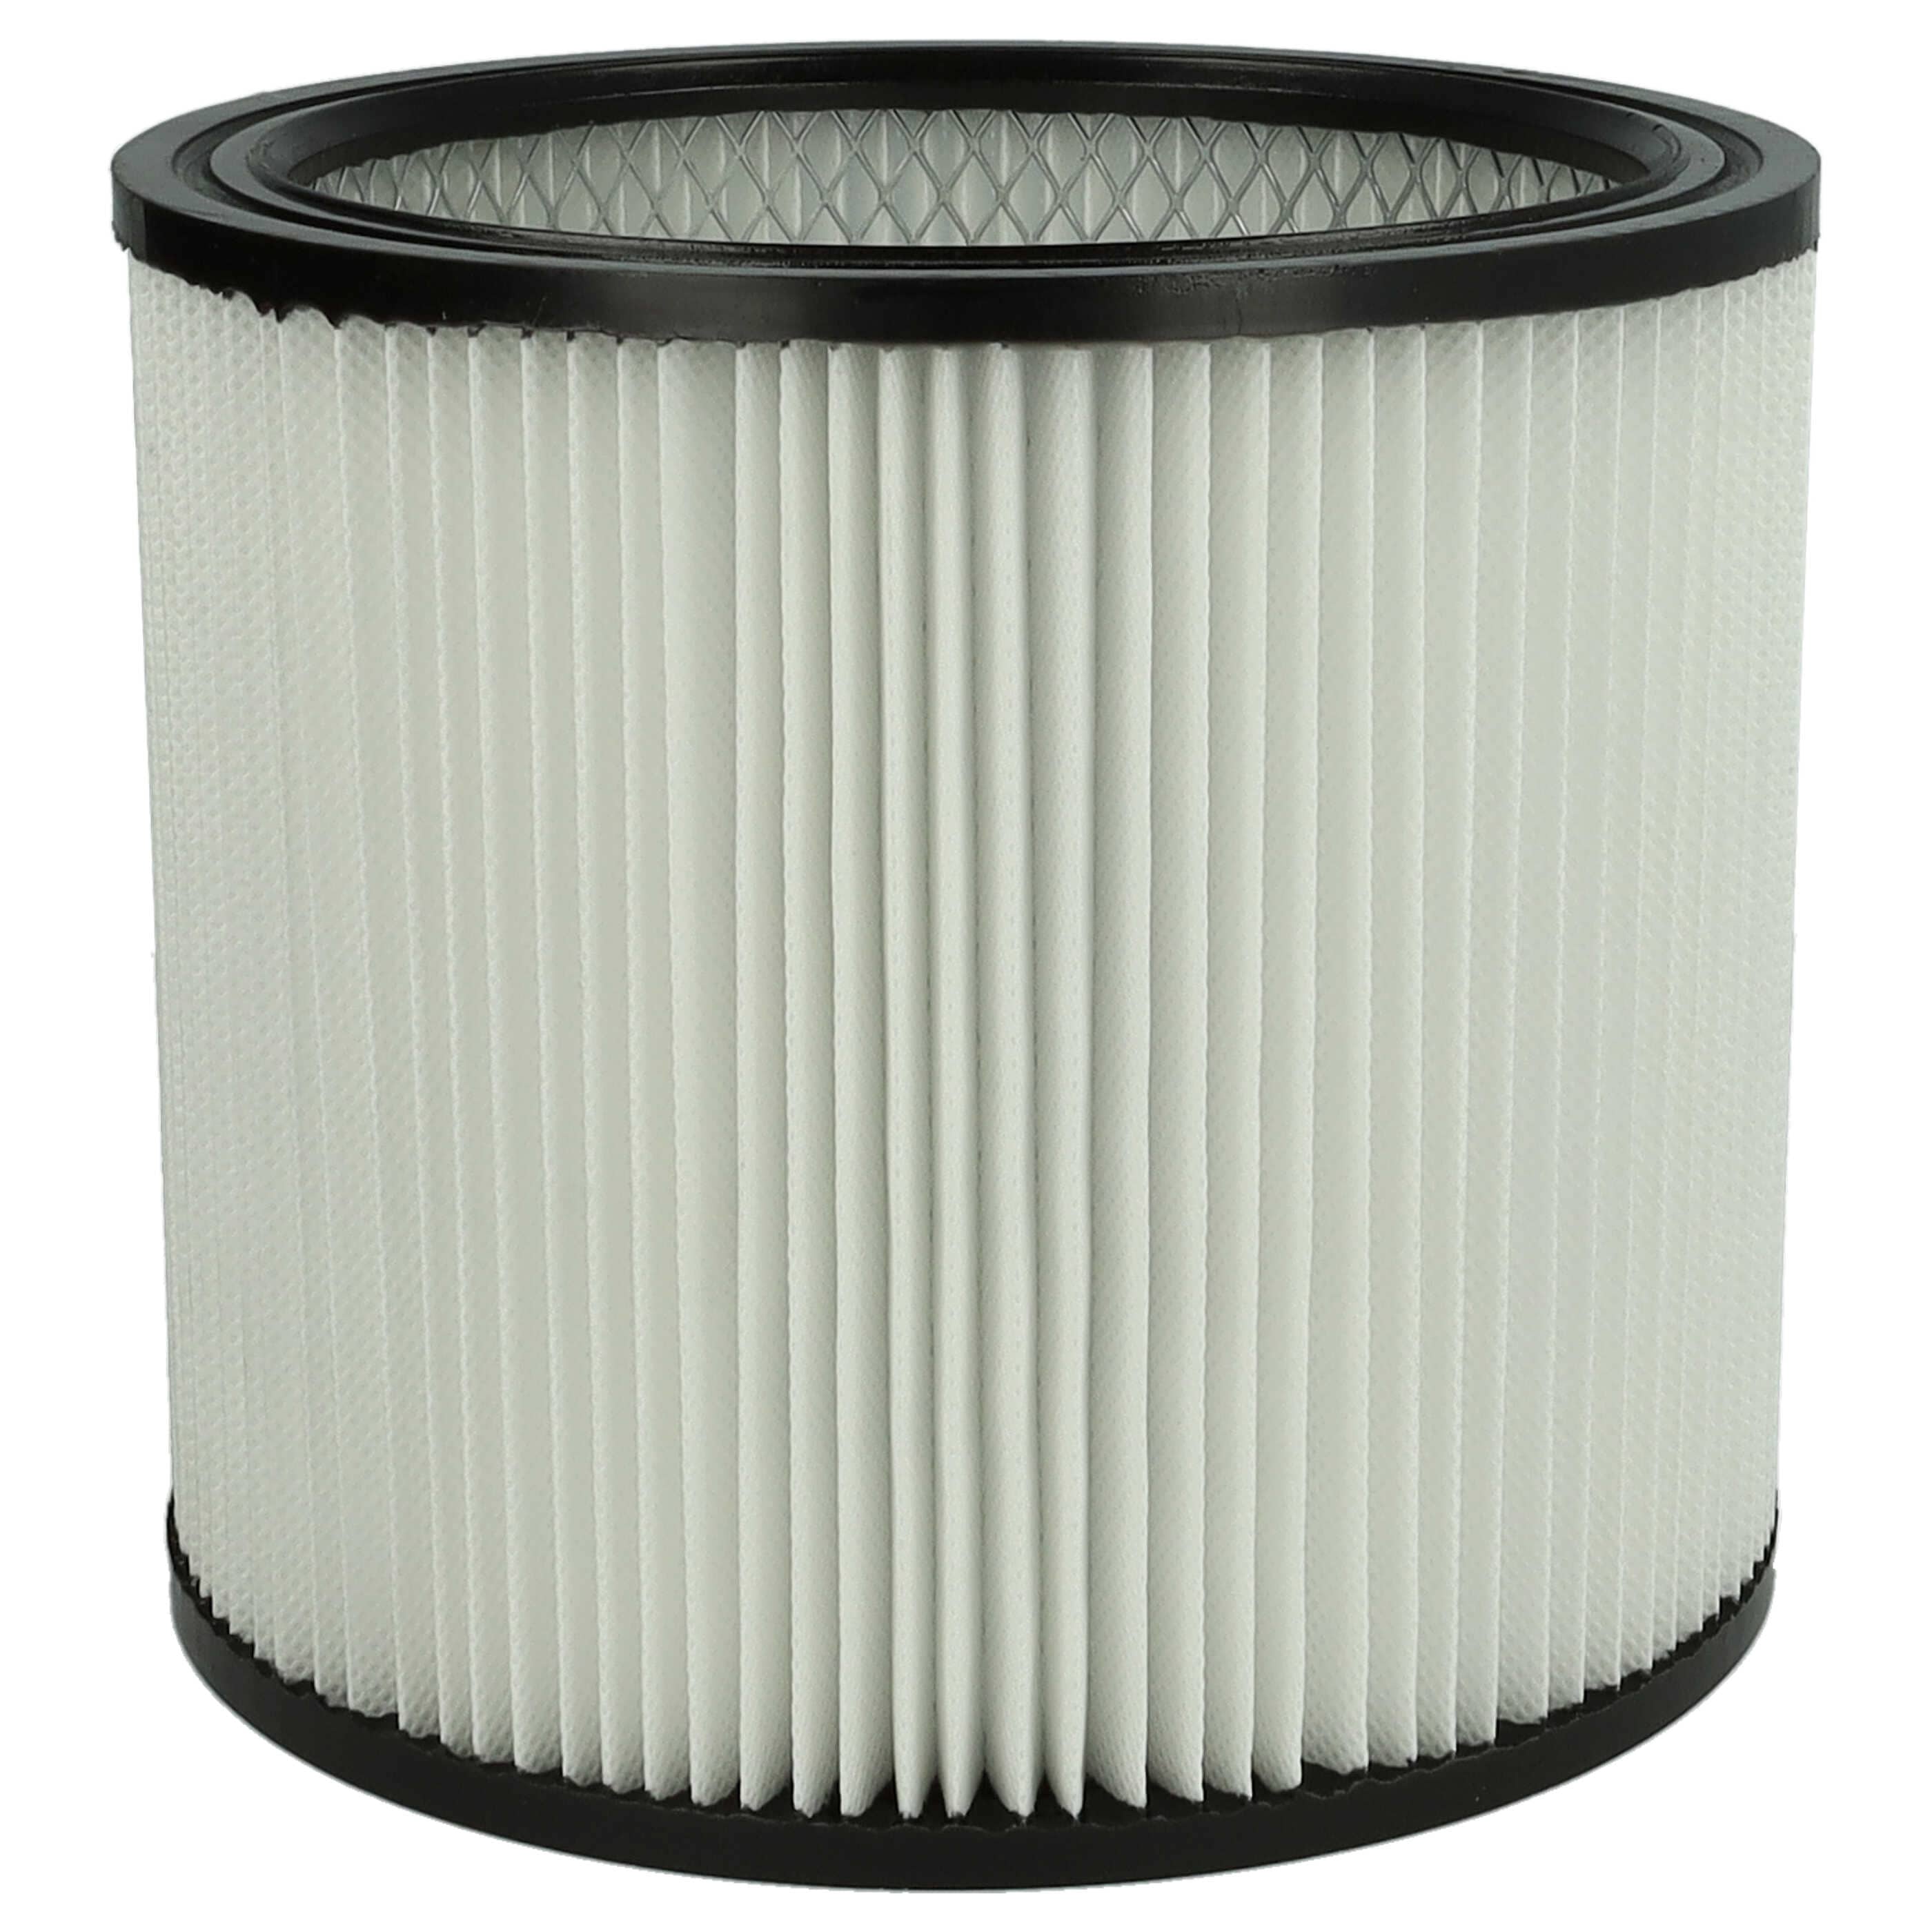 Filtre remplace ShopVac 90304, 126282903041, 903-04, 026282290038 pour aspirateur - Filtre de rechange